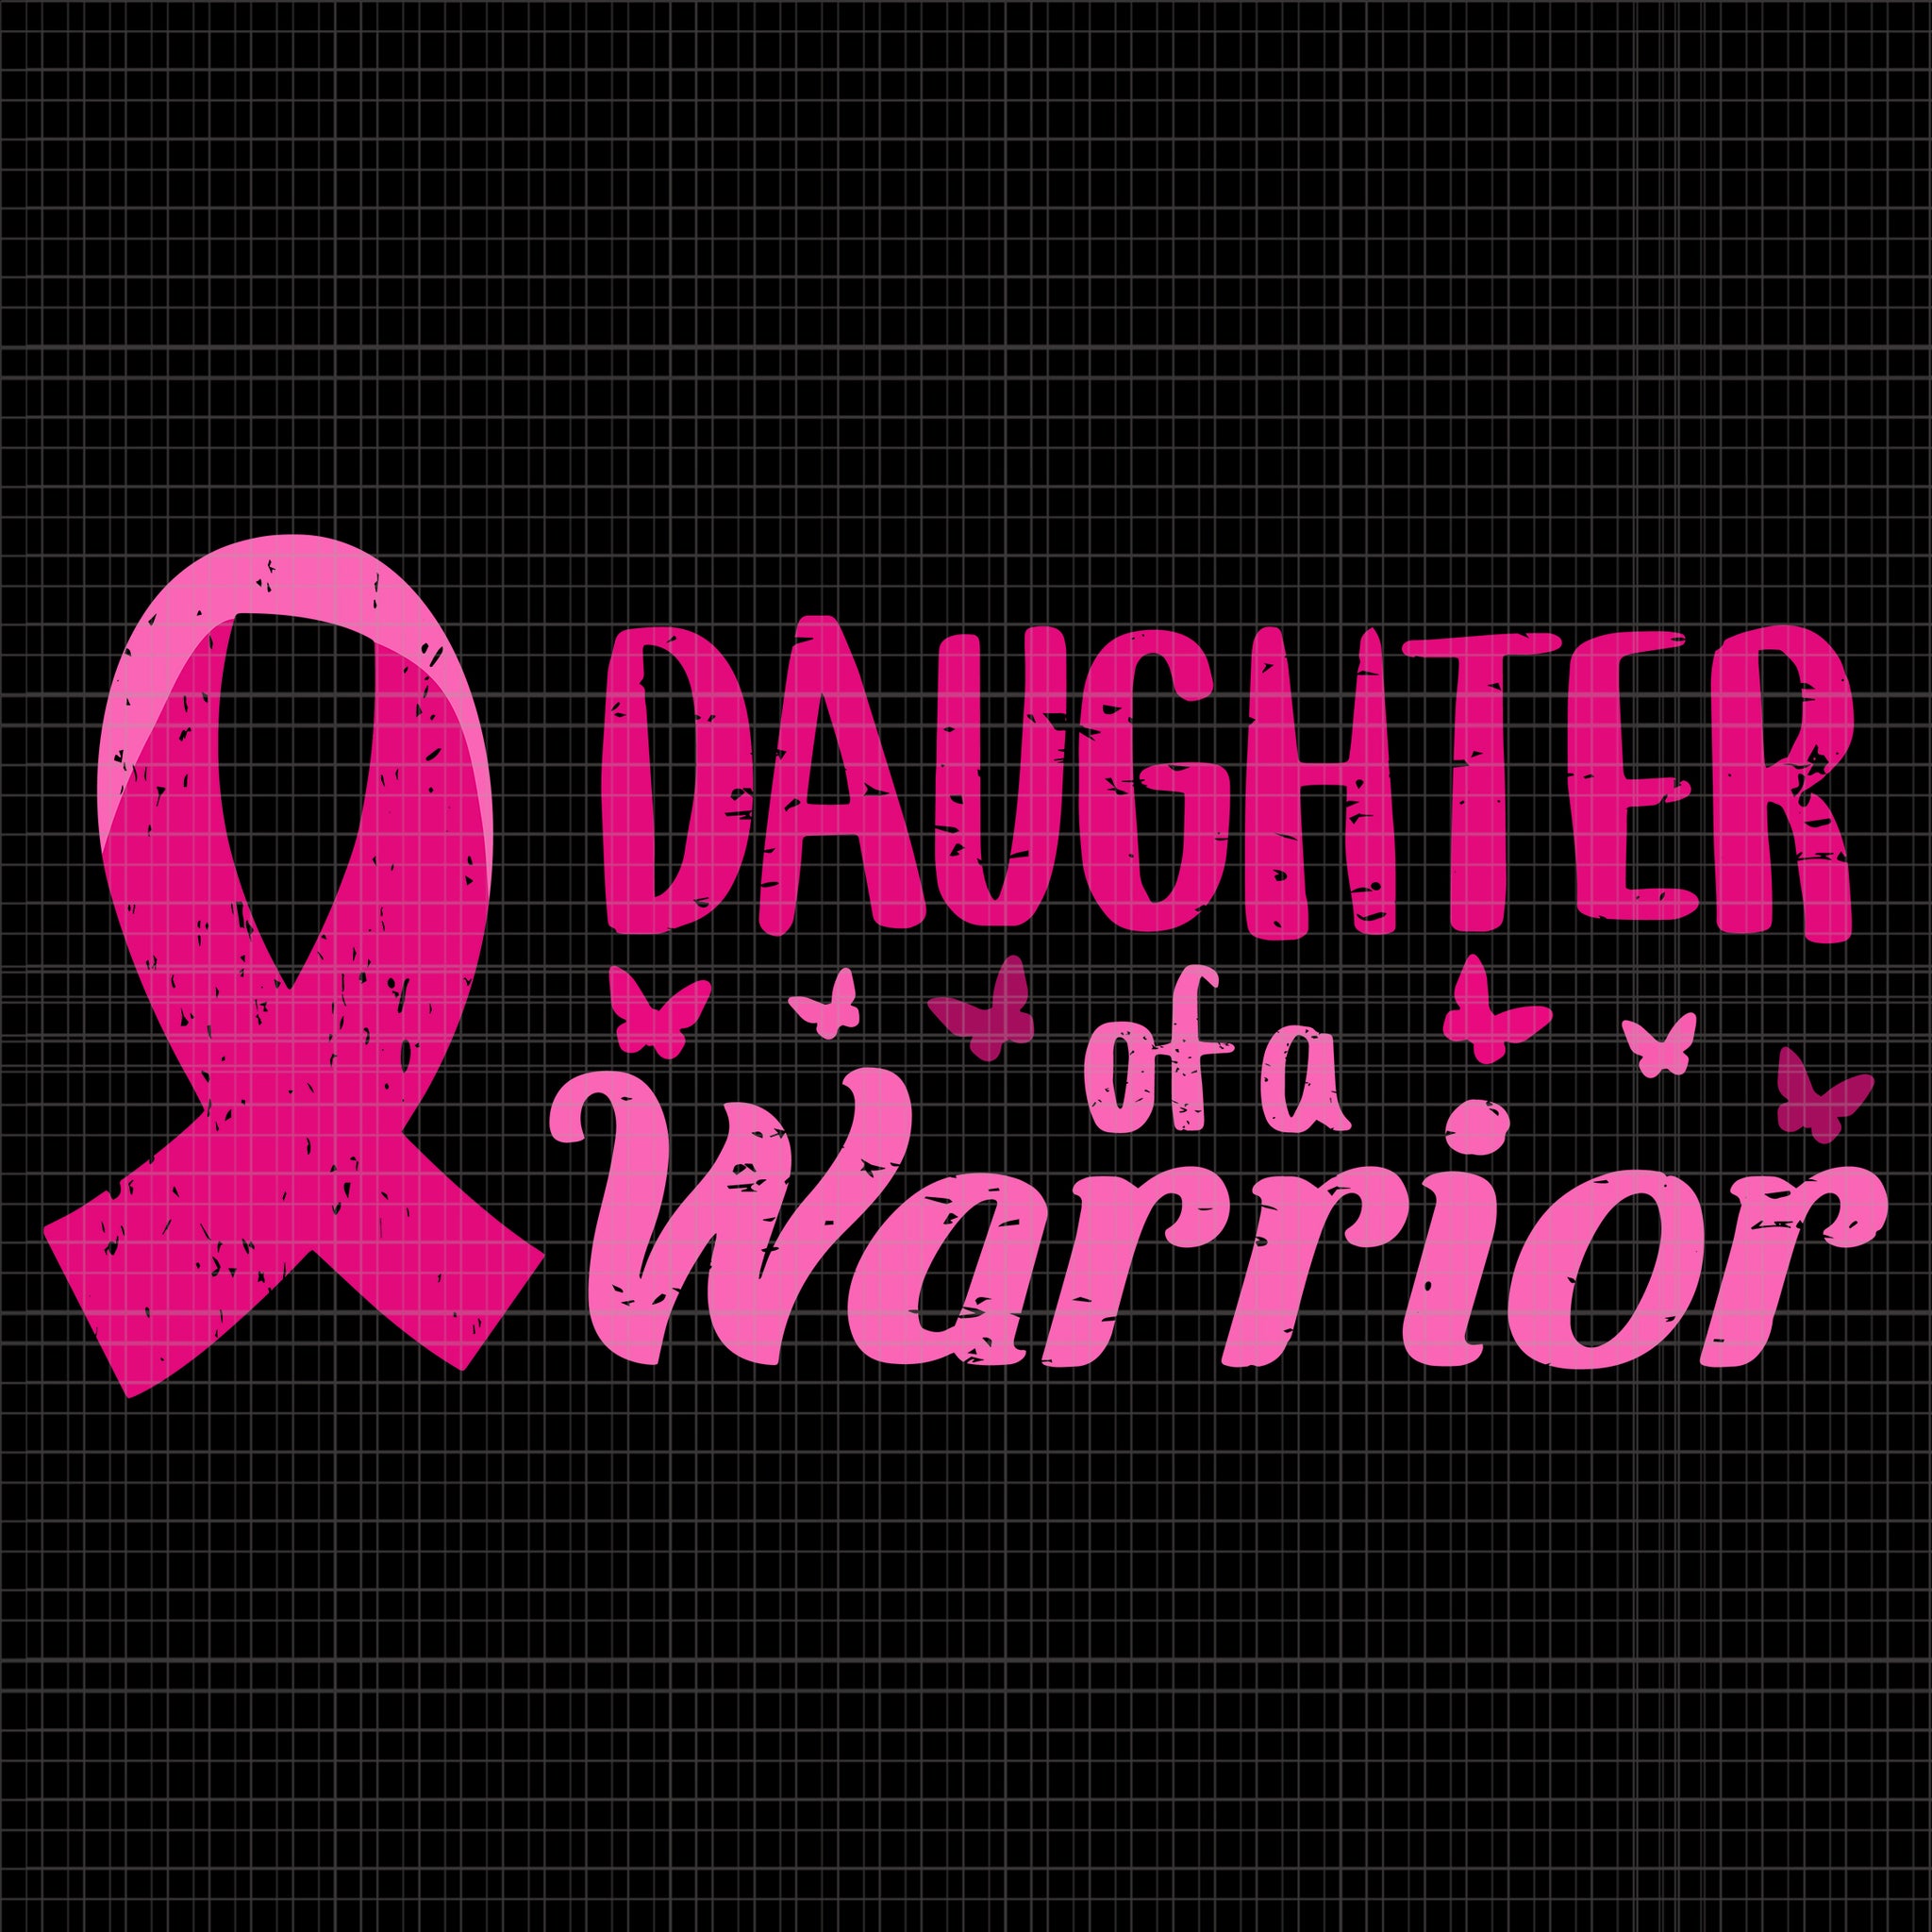 Daughter Of A Warrior Pink October Svg, Breast Cancer Awareness Svg,  Pink Ribbon Svg, Halloween Png, Autumn Png, Daughter Of A Warrior Svg